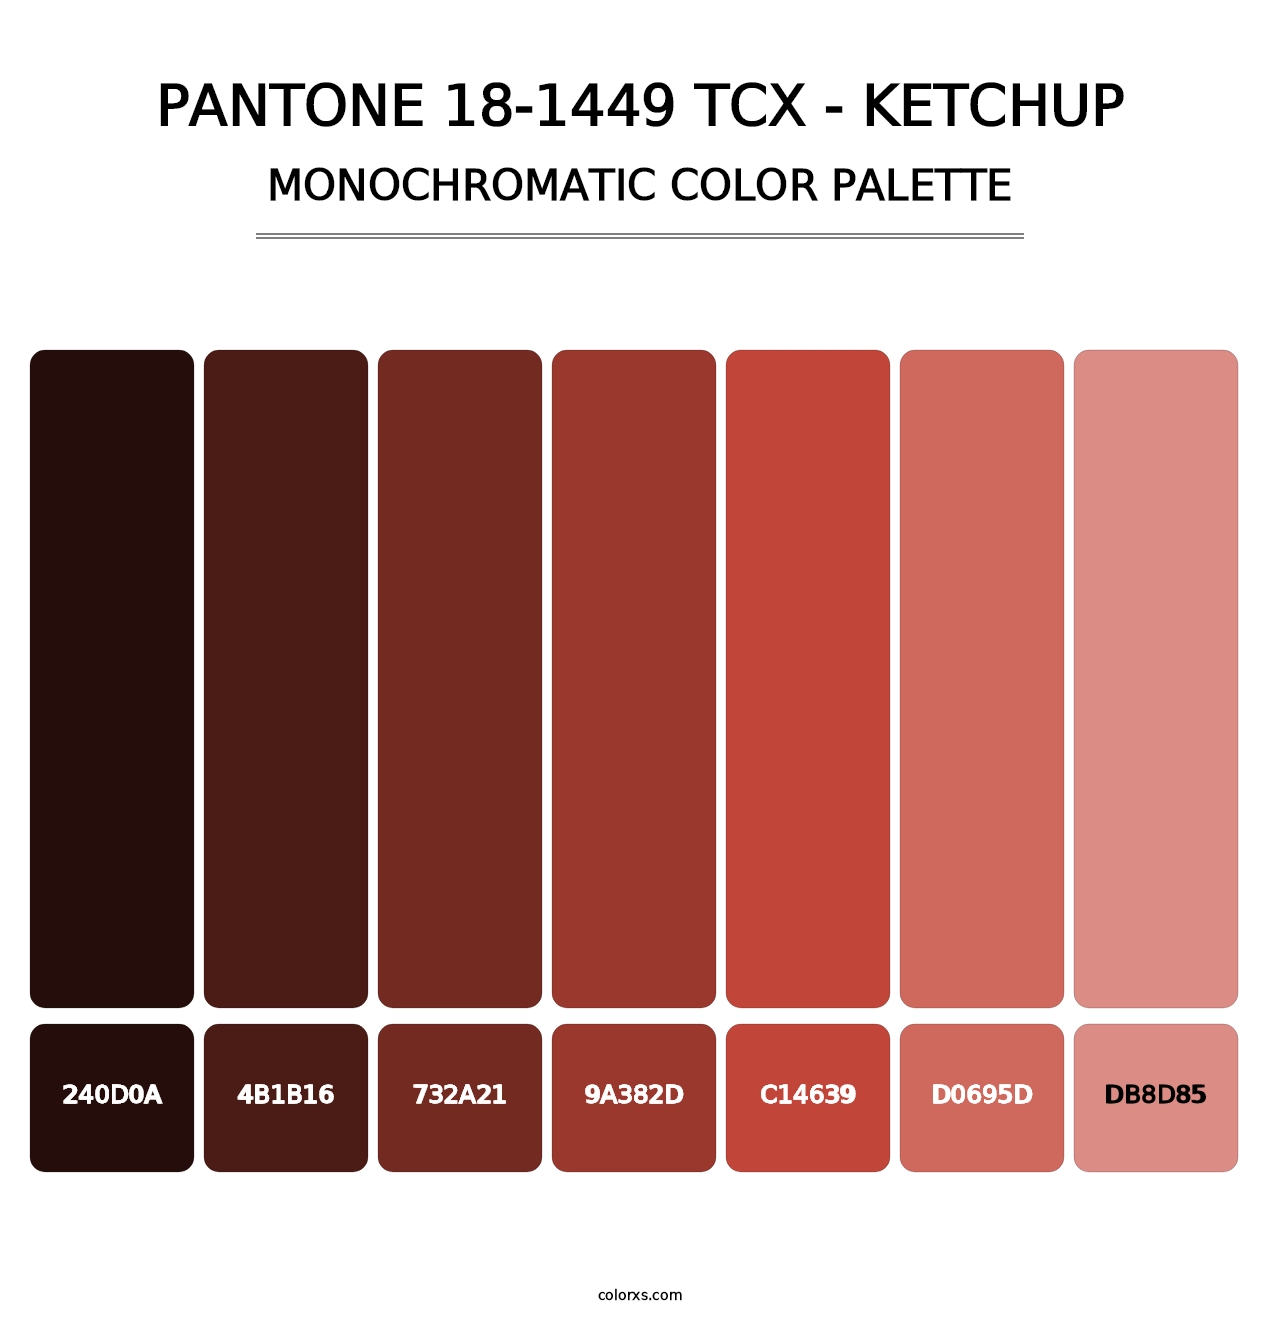 PANTONE 18-1449 TCX - Ketchup - Monochromatic Color Palette